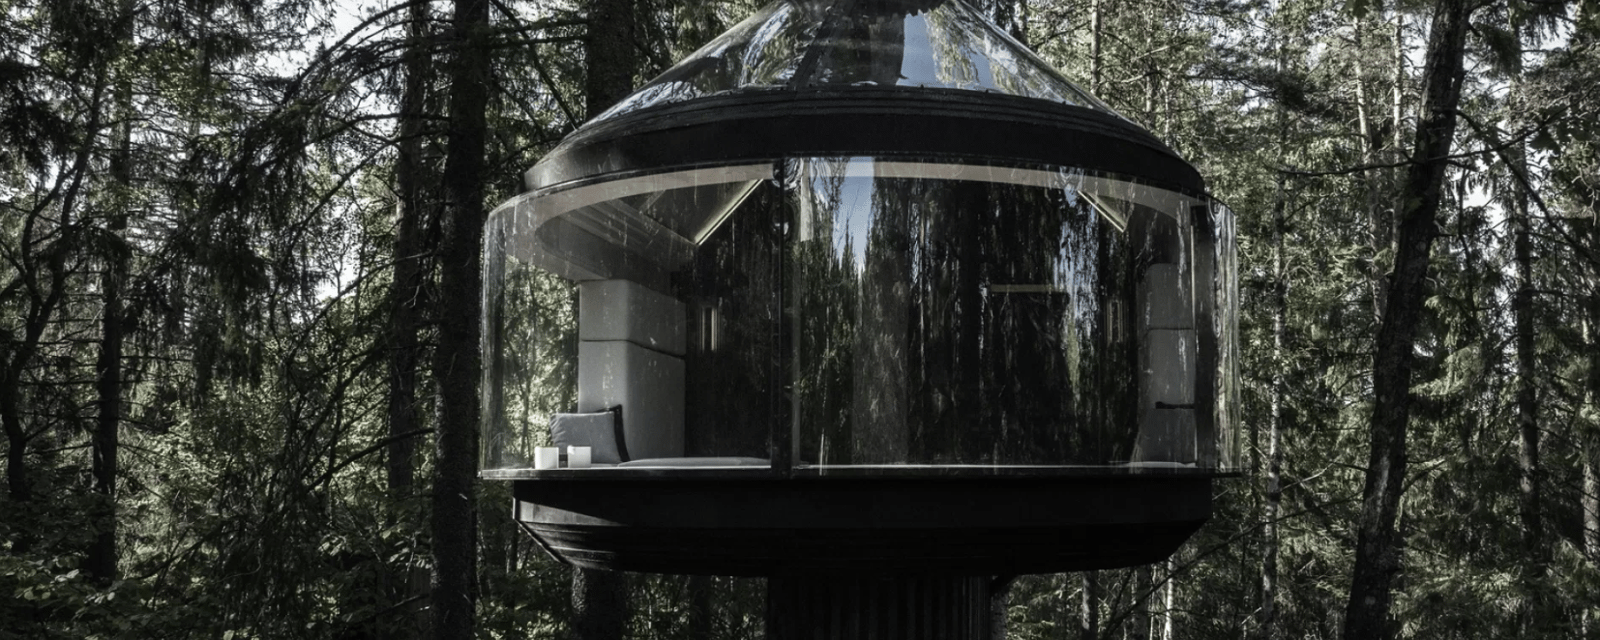 Découvrez l'intérieur de cette unique maison dans les arbres située en pleine forêt